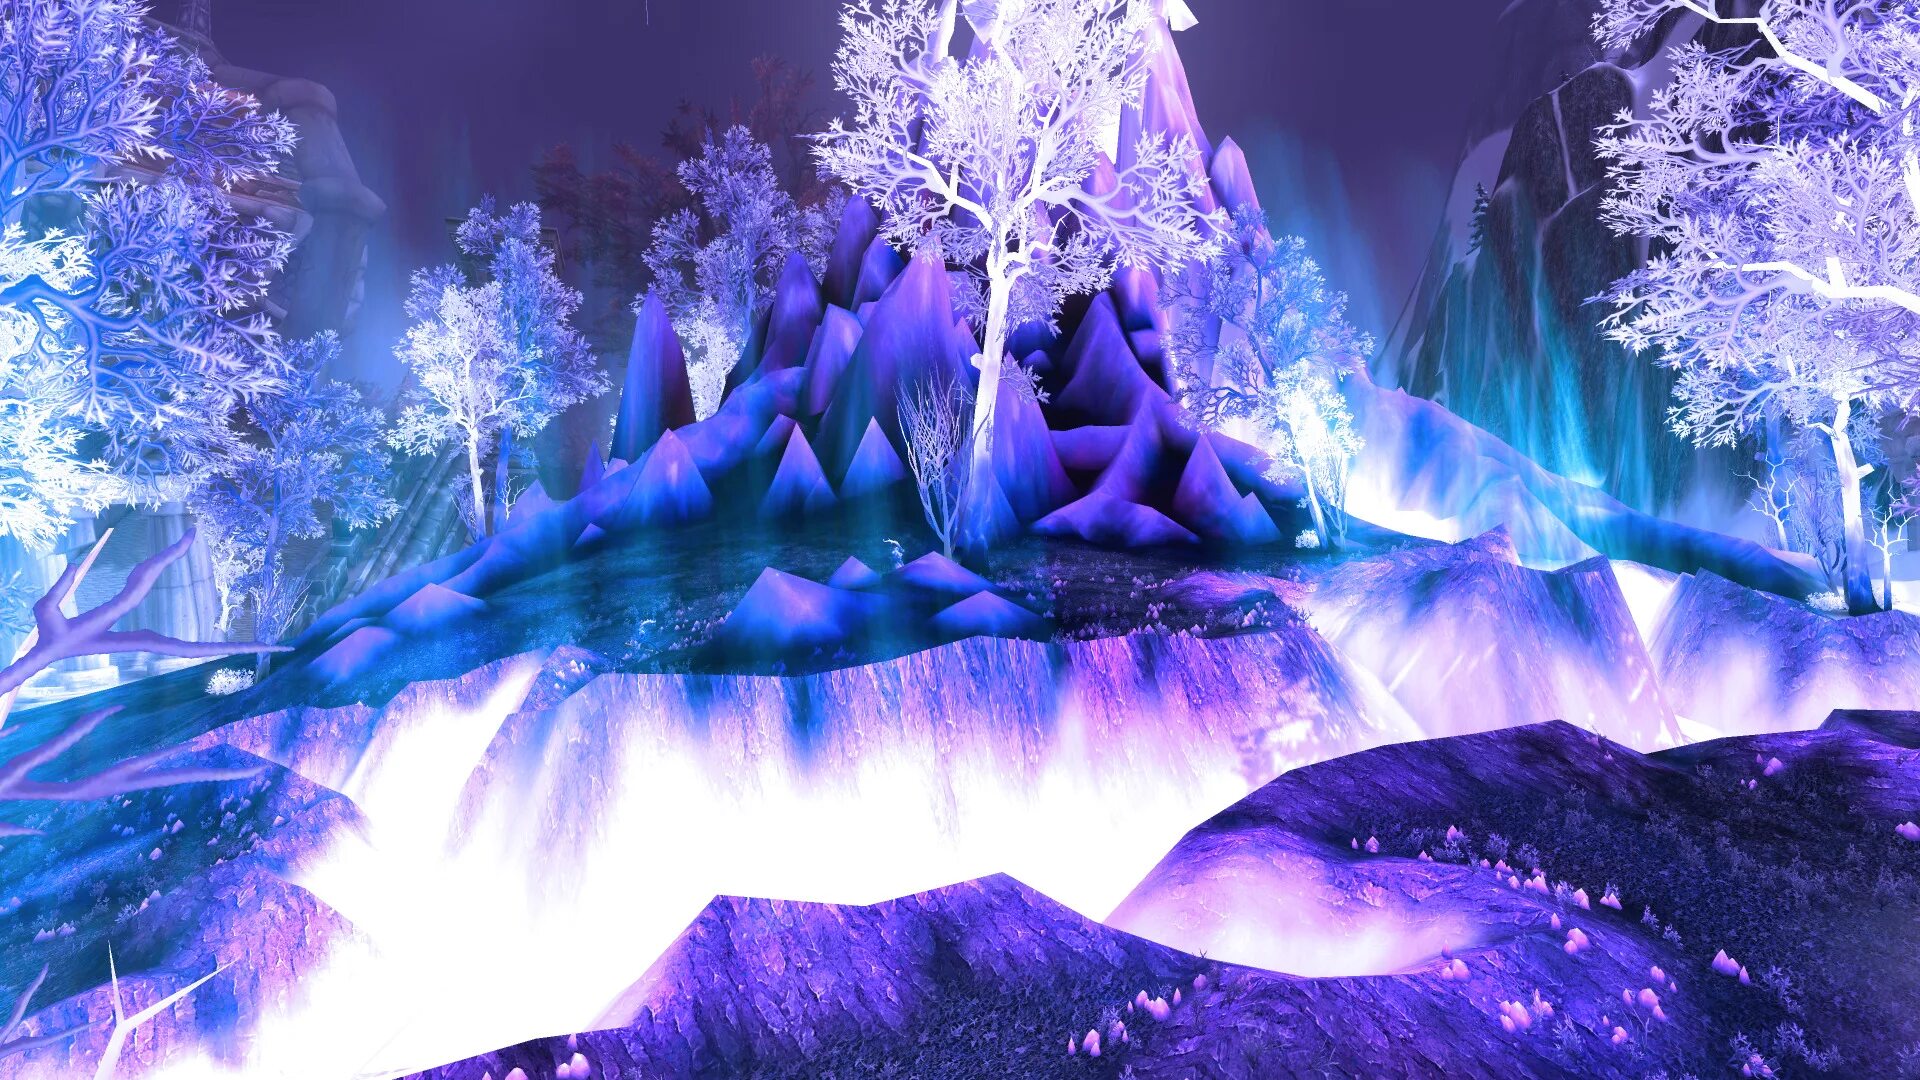 Фф и в морозном лесу навеки останусь. Нордскол Хрустальный лес. World of Warcraft Хрустальный лес. World of Warcraft ледяной лес. Ледяной лес фэнтези.